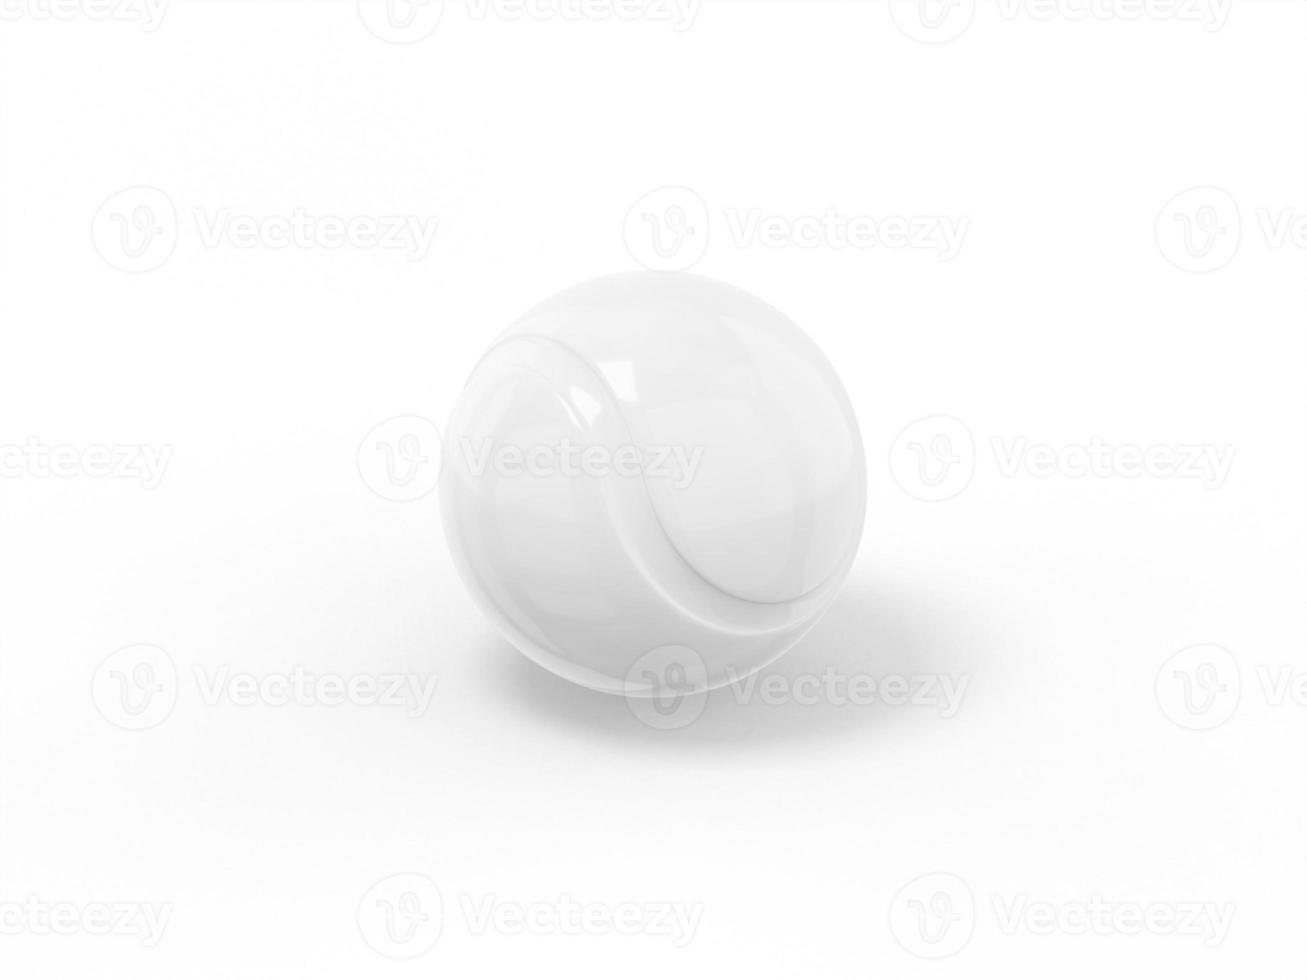 witte één kleur tennisbal op een witte vlakke achtergrond. minimalistisch designobject. 3D-rendering pictogram ui ux interface-element. foto